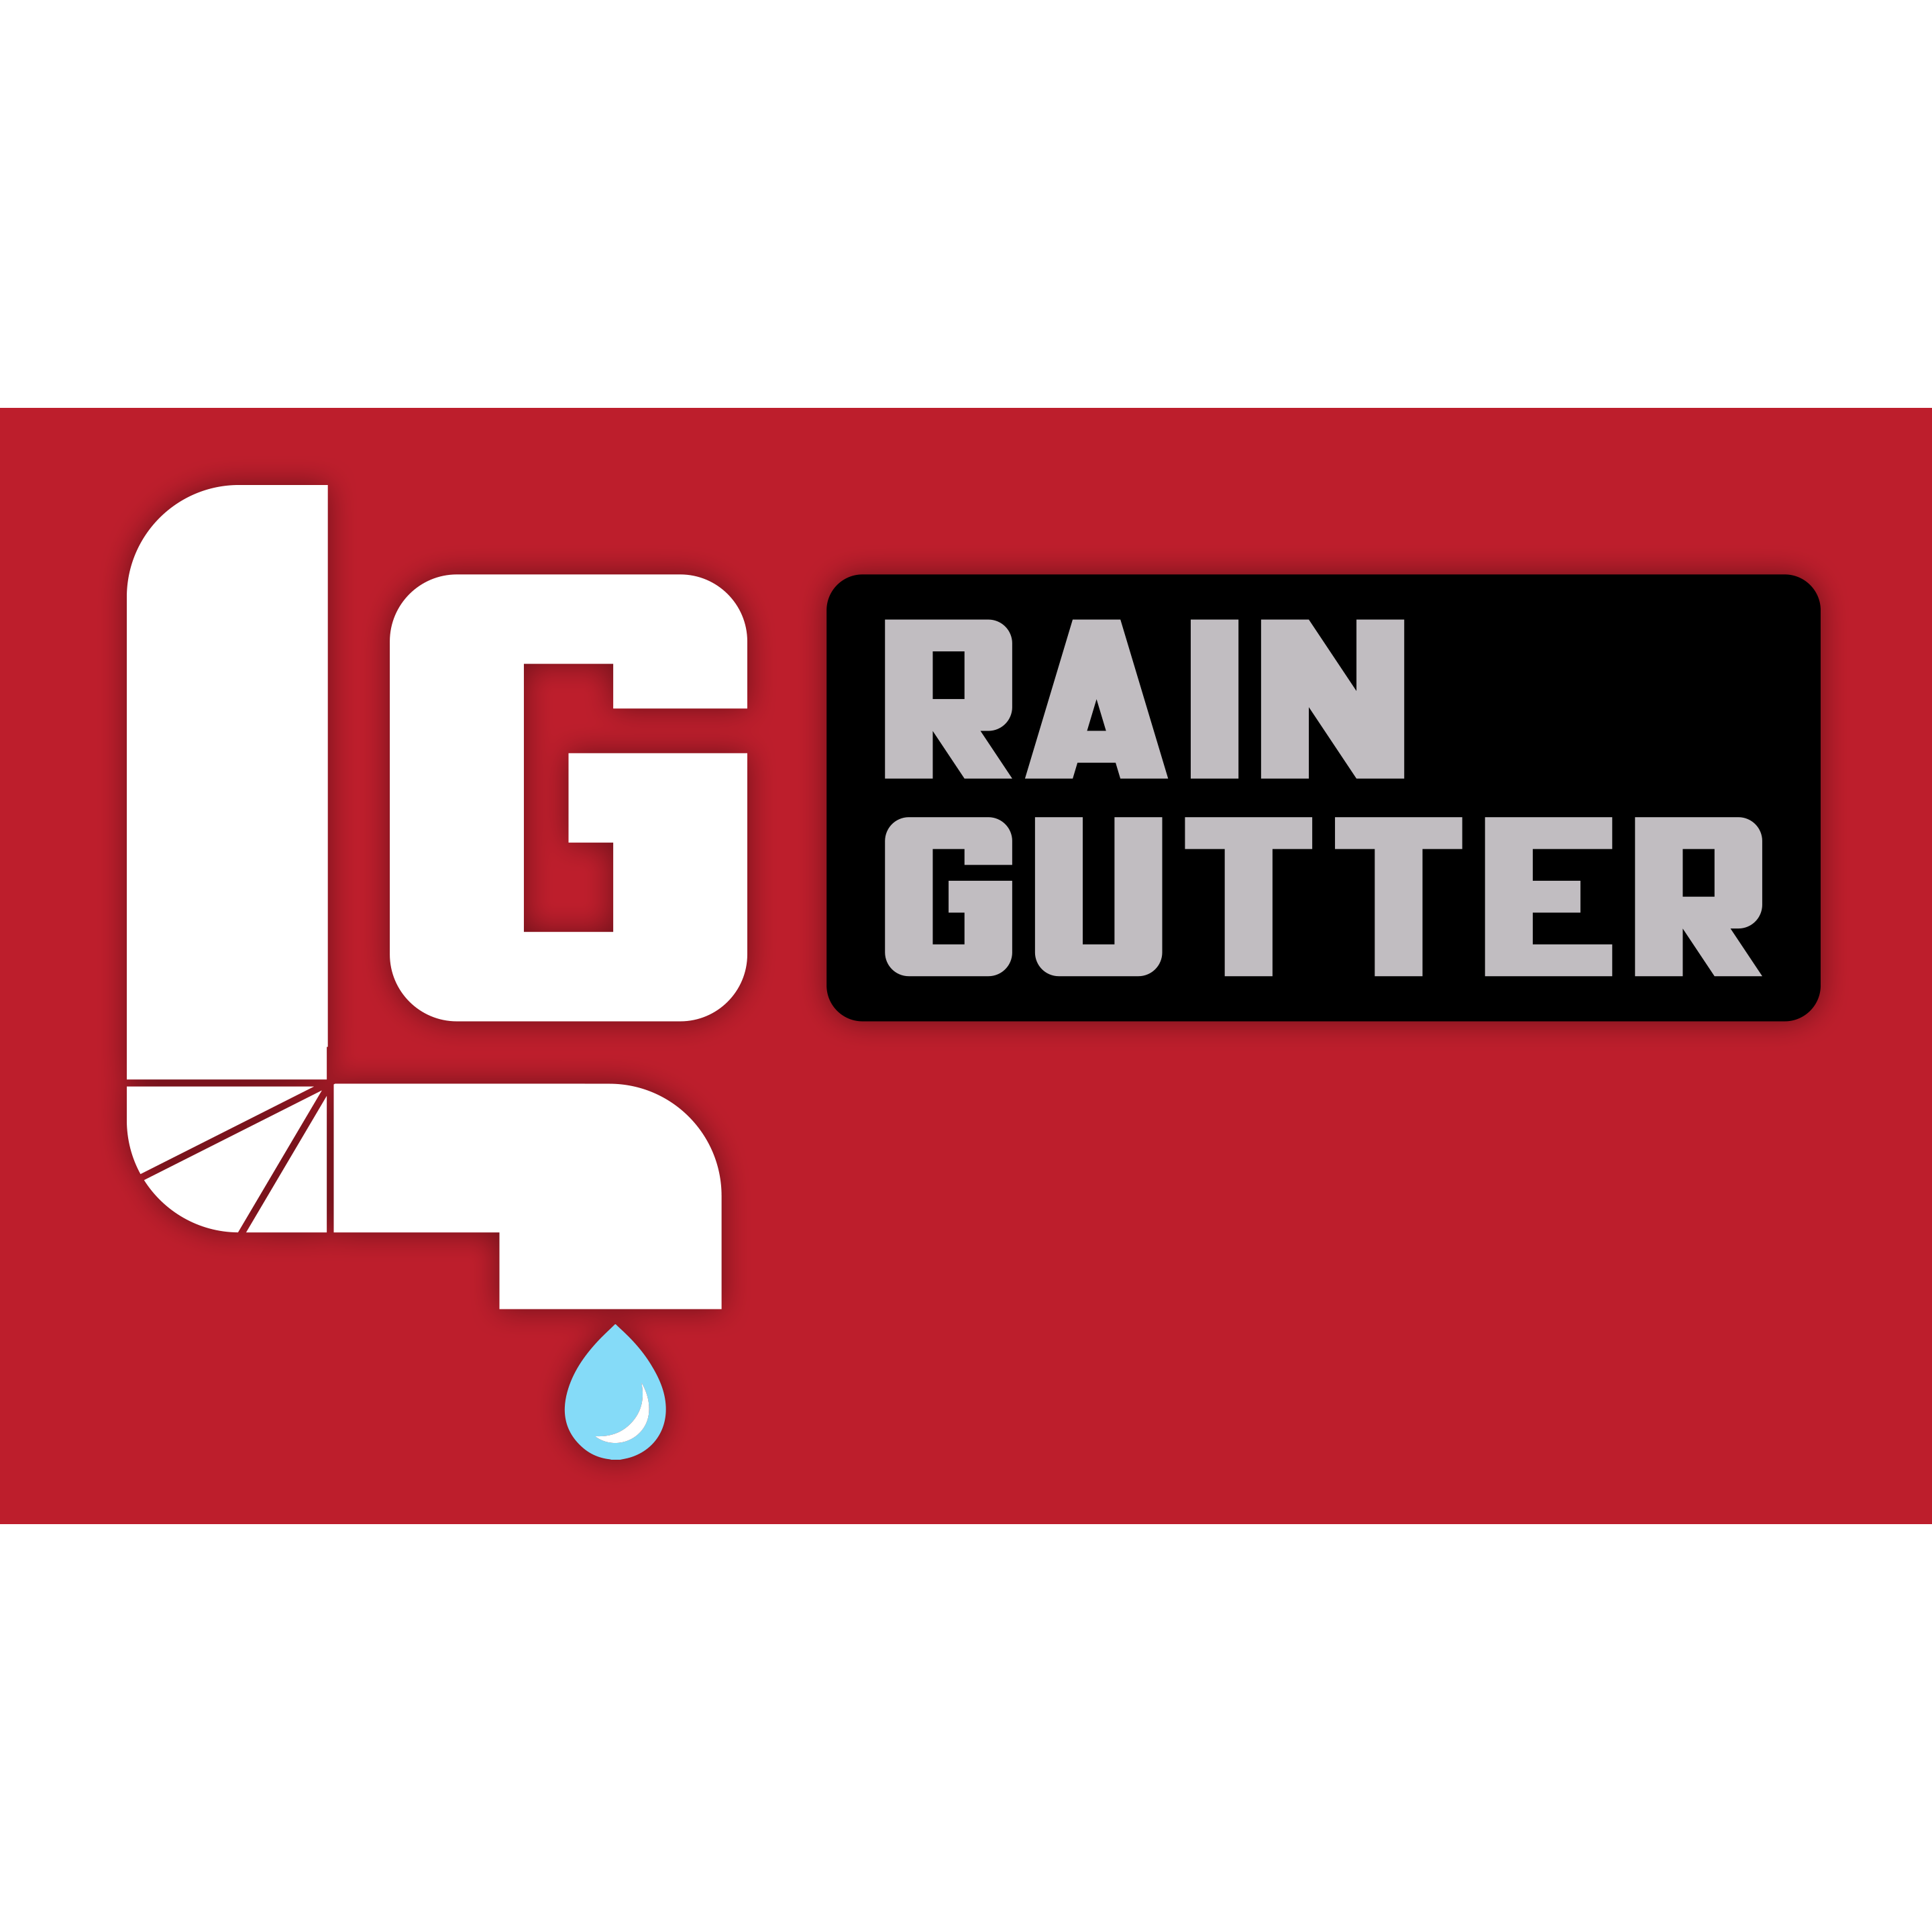 LG Rain Gutter - Midvale, UT 84047 - (801)528-4479 | ShowMeLocal.com